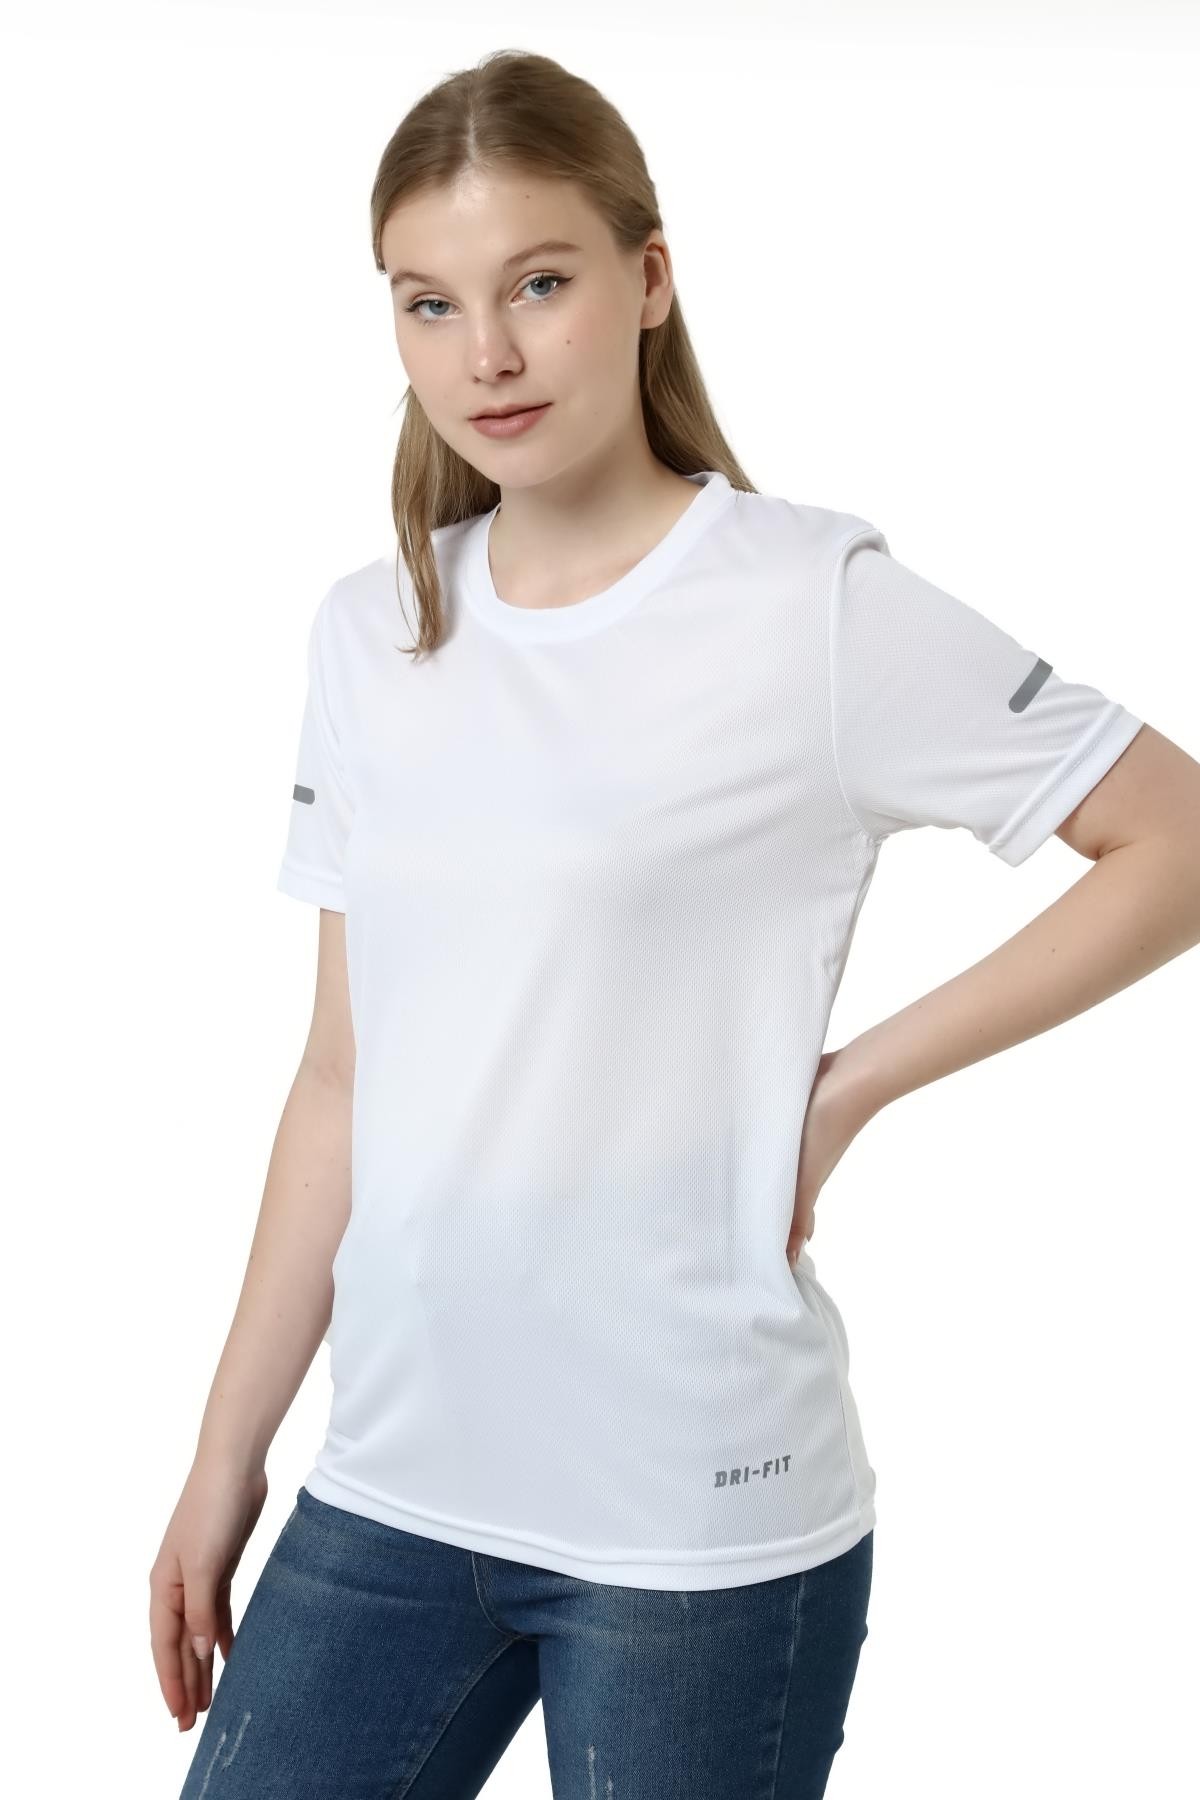 Ghassy Co. Kadın Nem Emici Hızlı Kuruma Atletik Teknik Performans T-shirt - BEYAZ